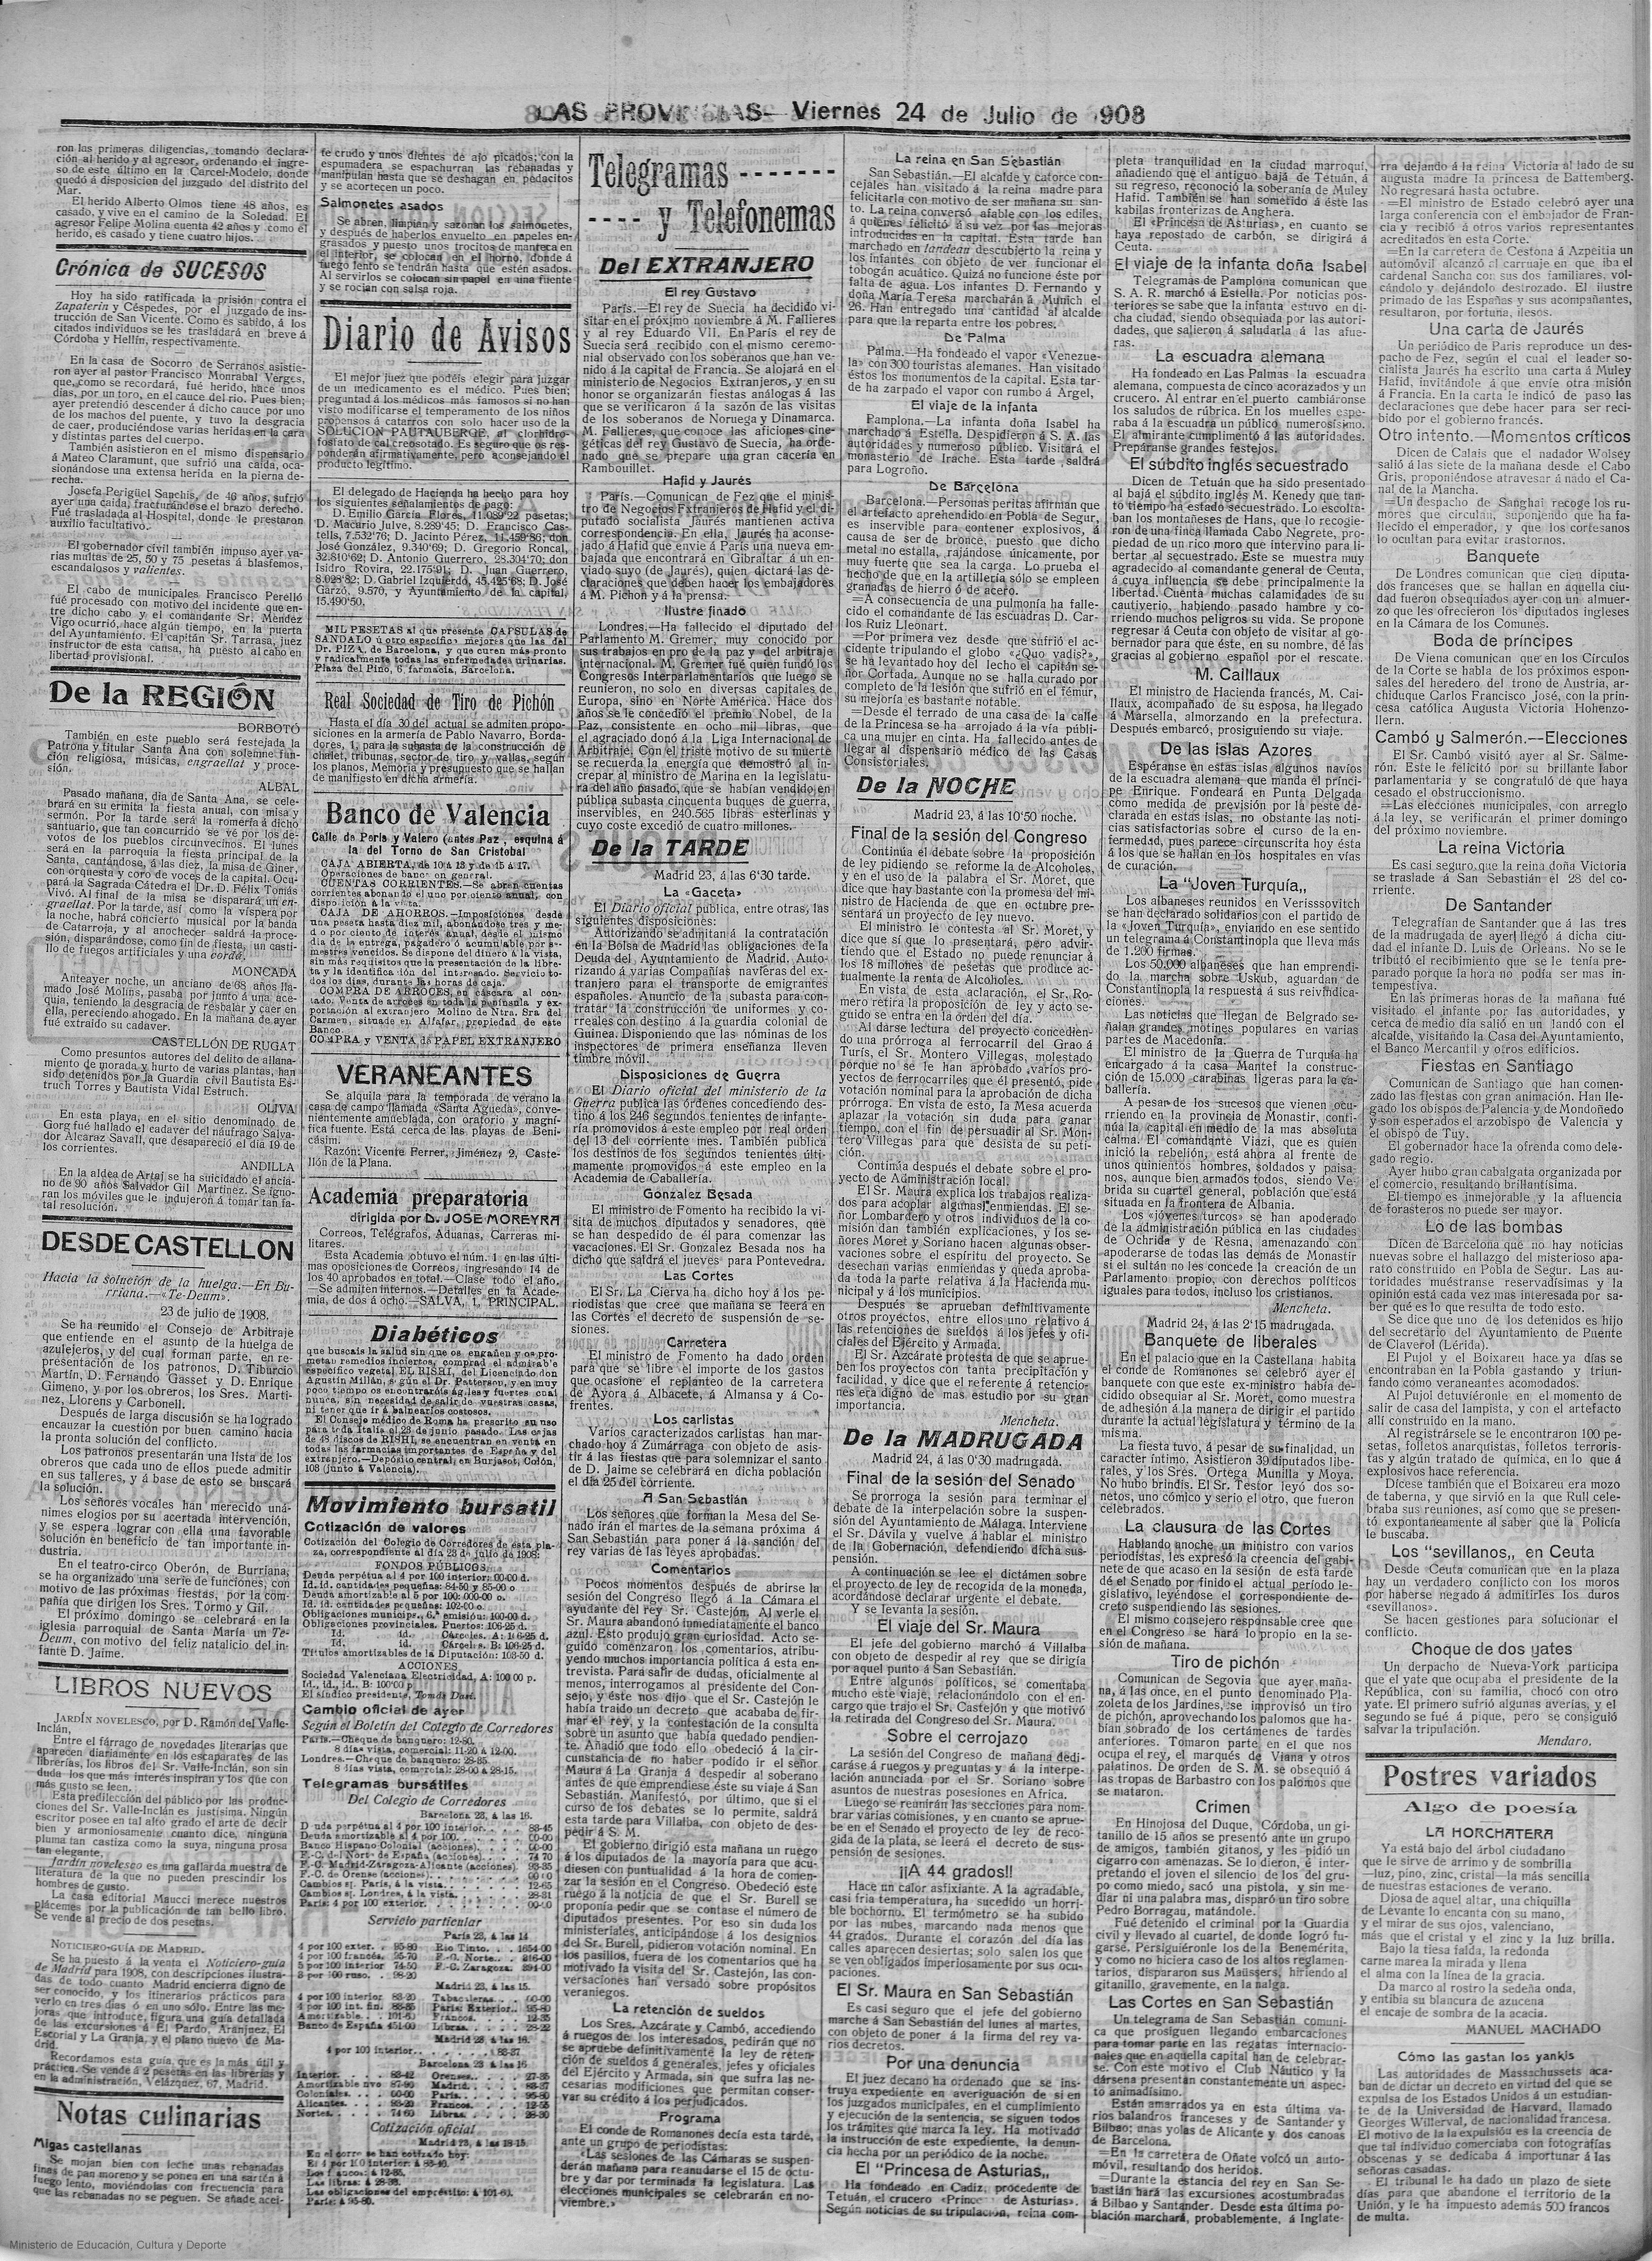 Nota del suicicidio publicada en Las Provincias el 24-07.1908